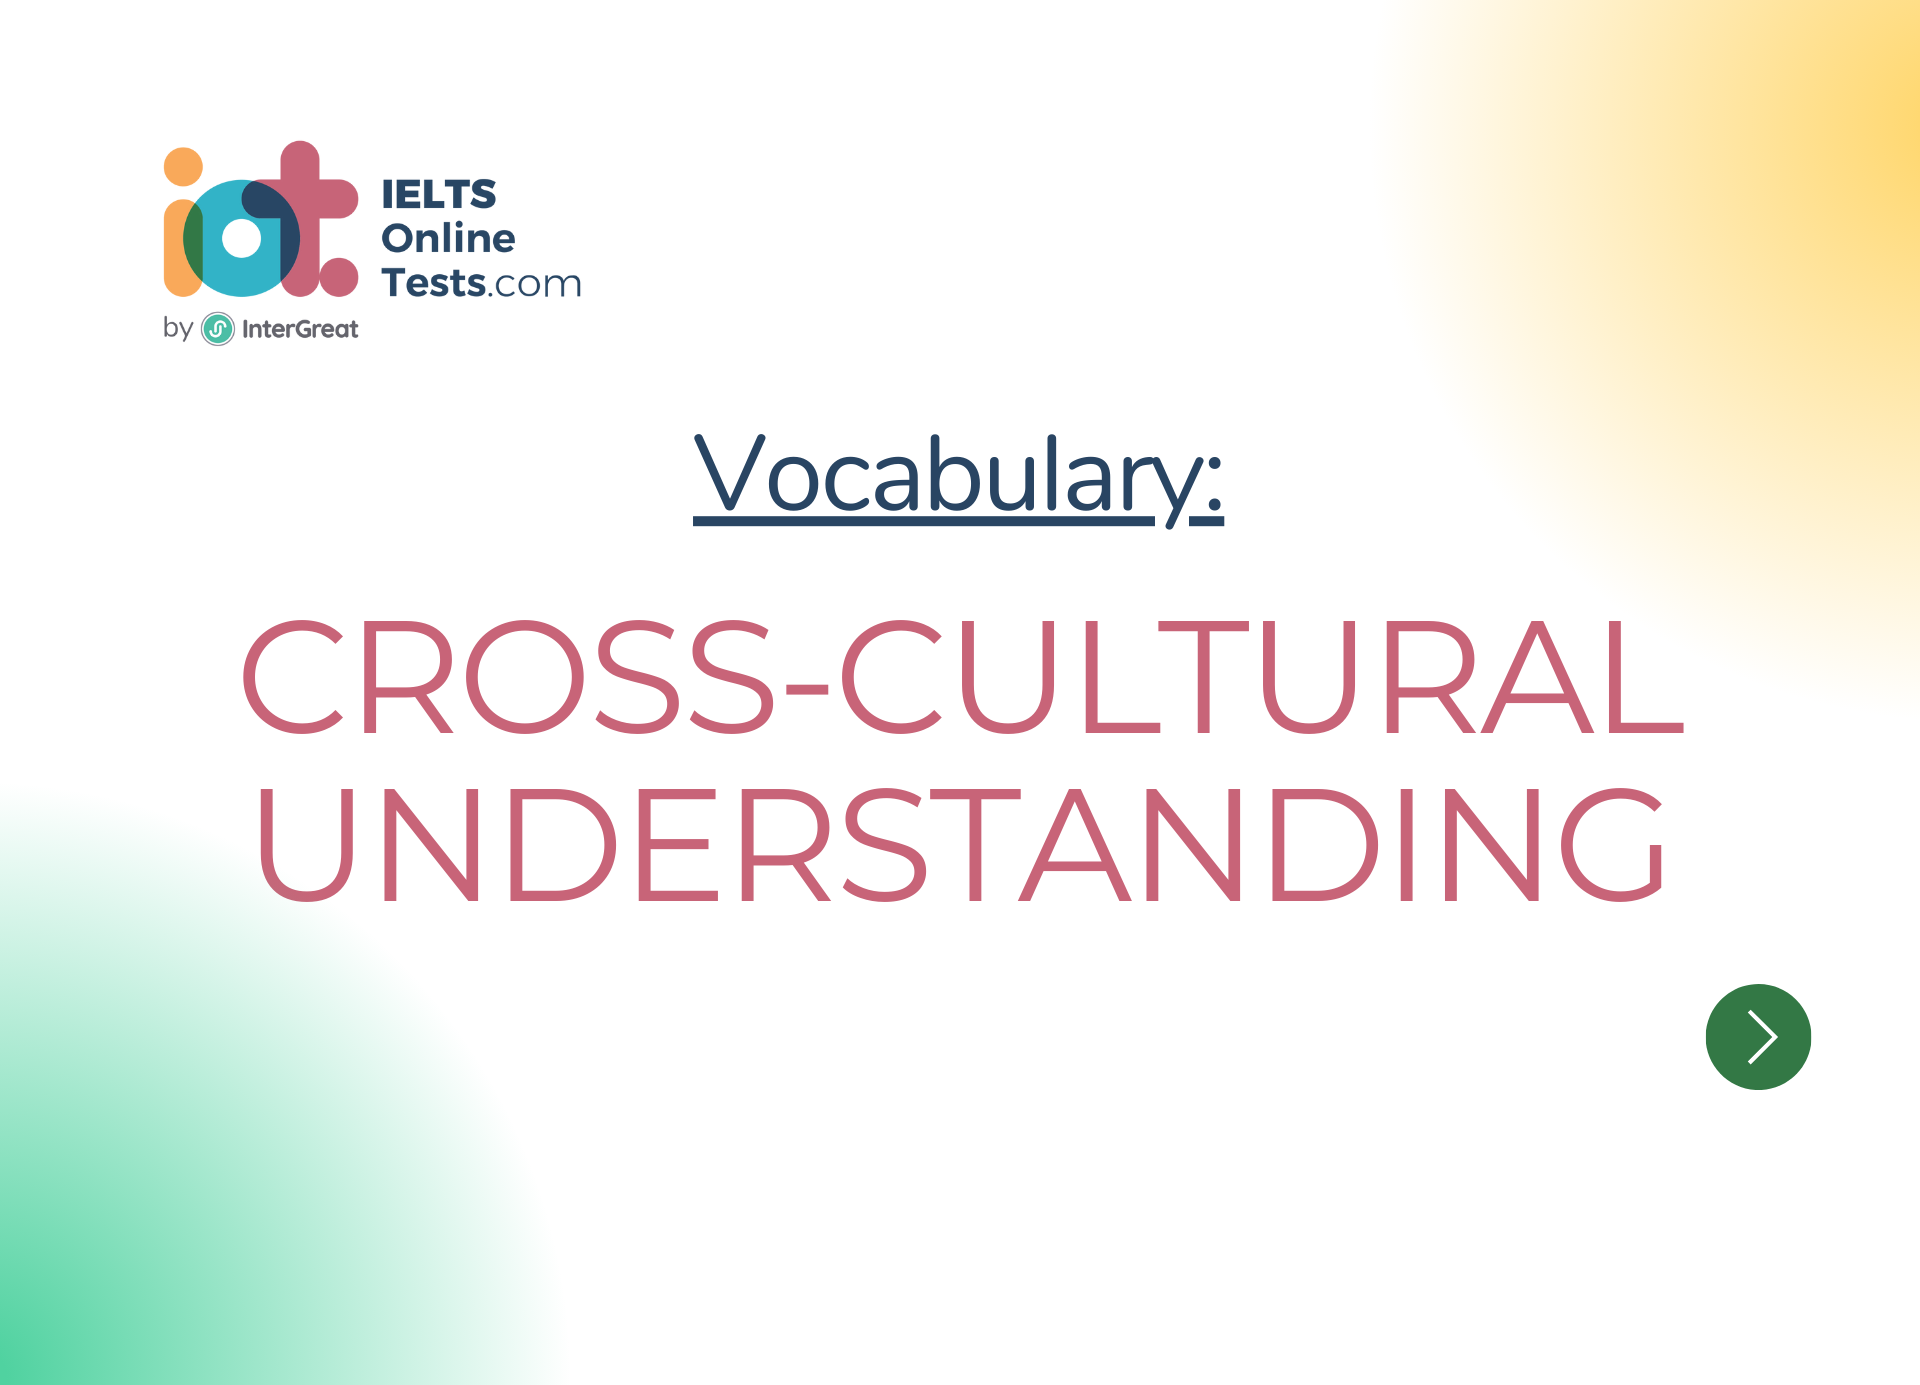 Cross-cultural understanding | IELTS Online Tests